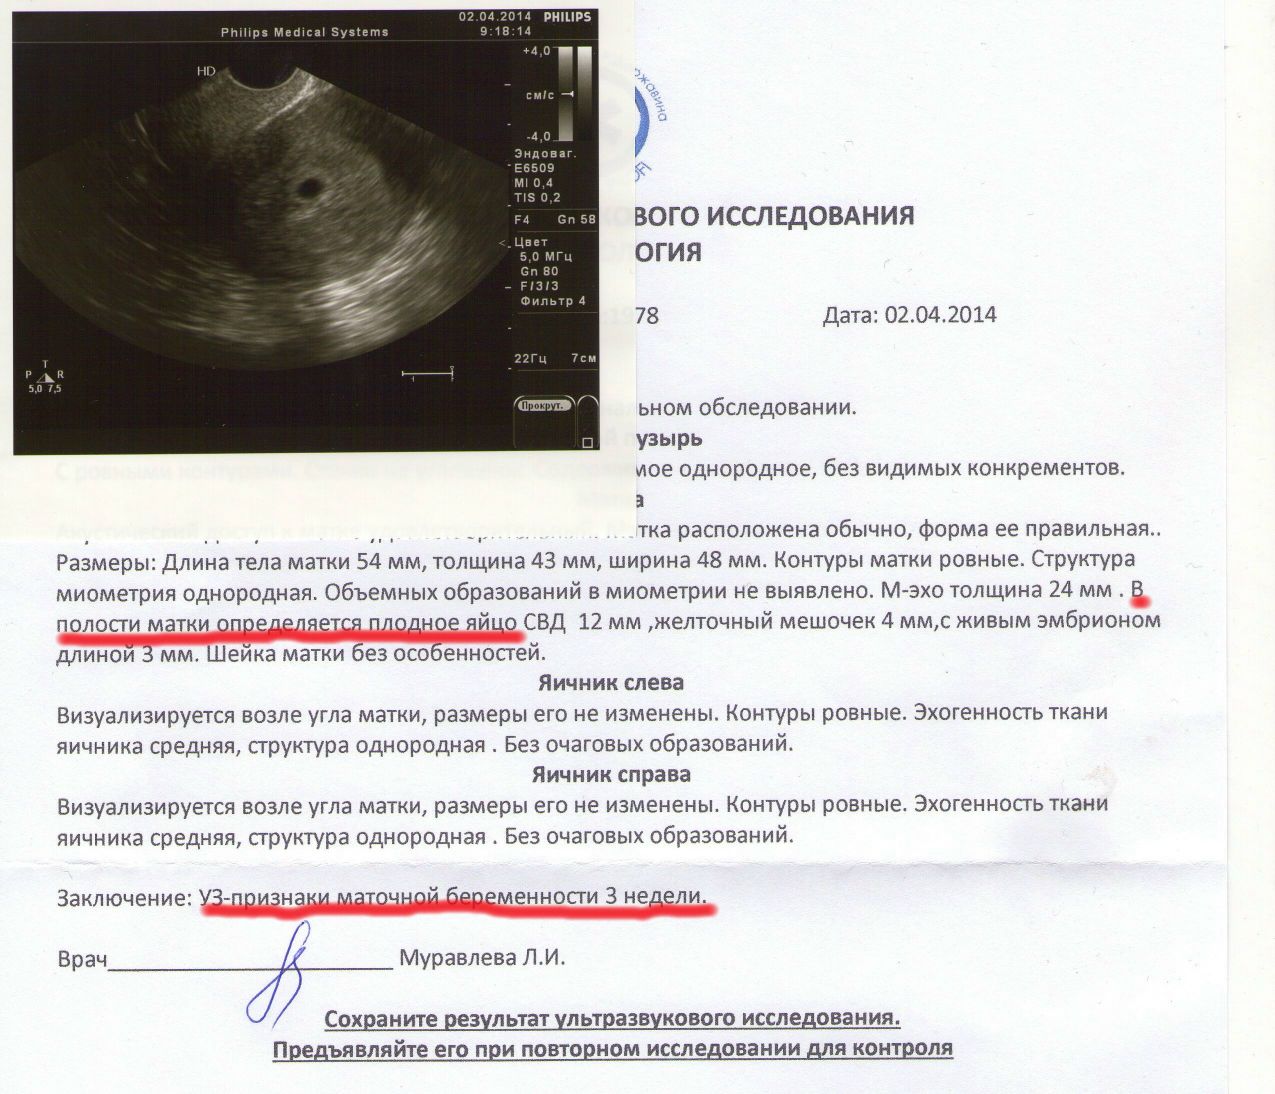 Размер полости матки. Анэмбриония по УЗИ заключение. Анэмбриония на УЗИ 6 недель. Желточный мешочек визуализируется 3 мм. КТР 7 мм желточный мешок 5 мм.